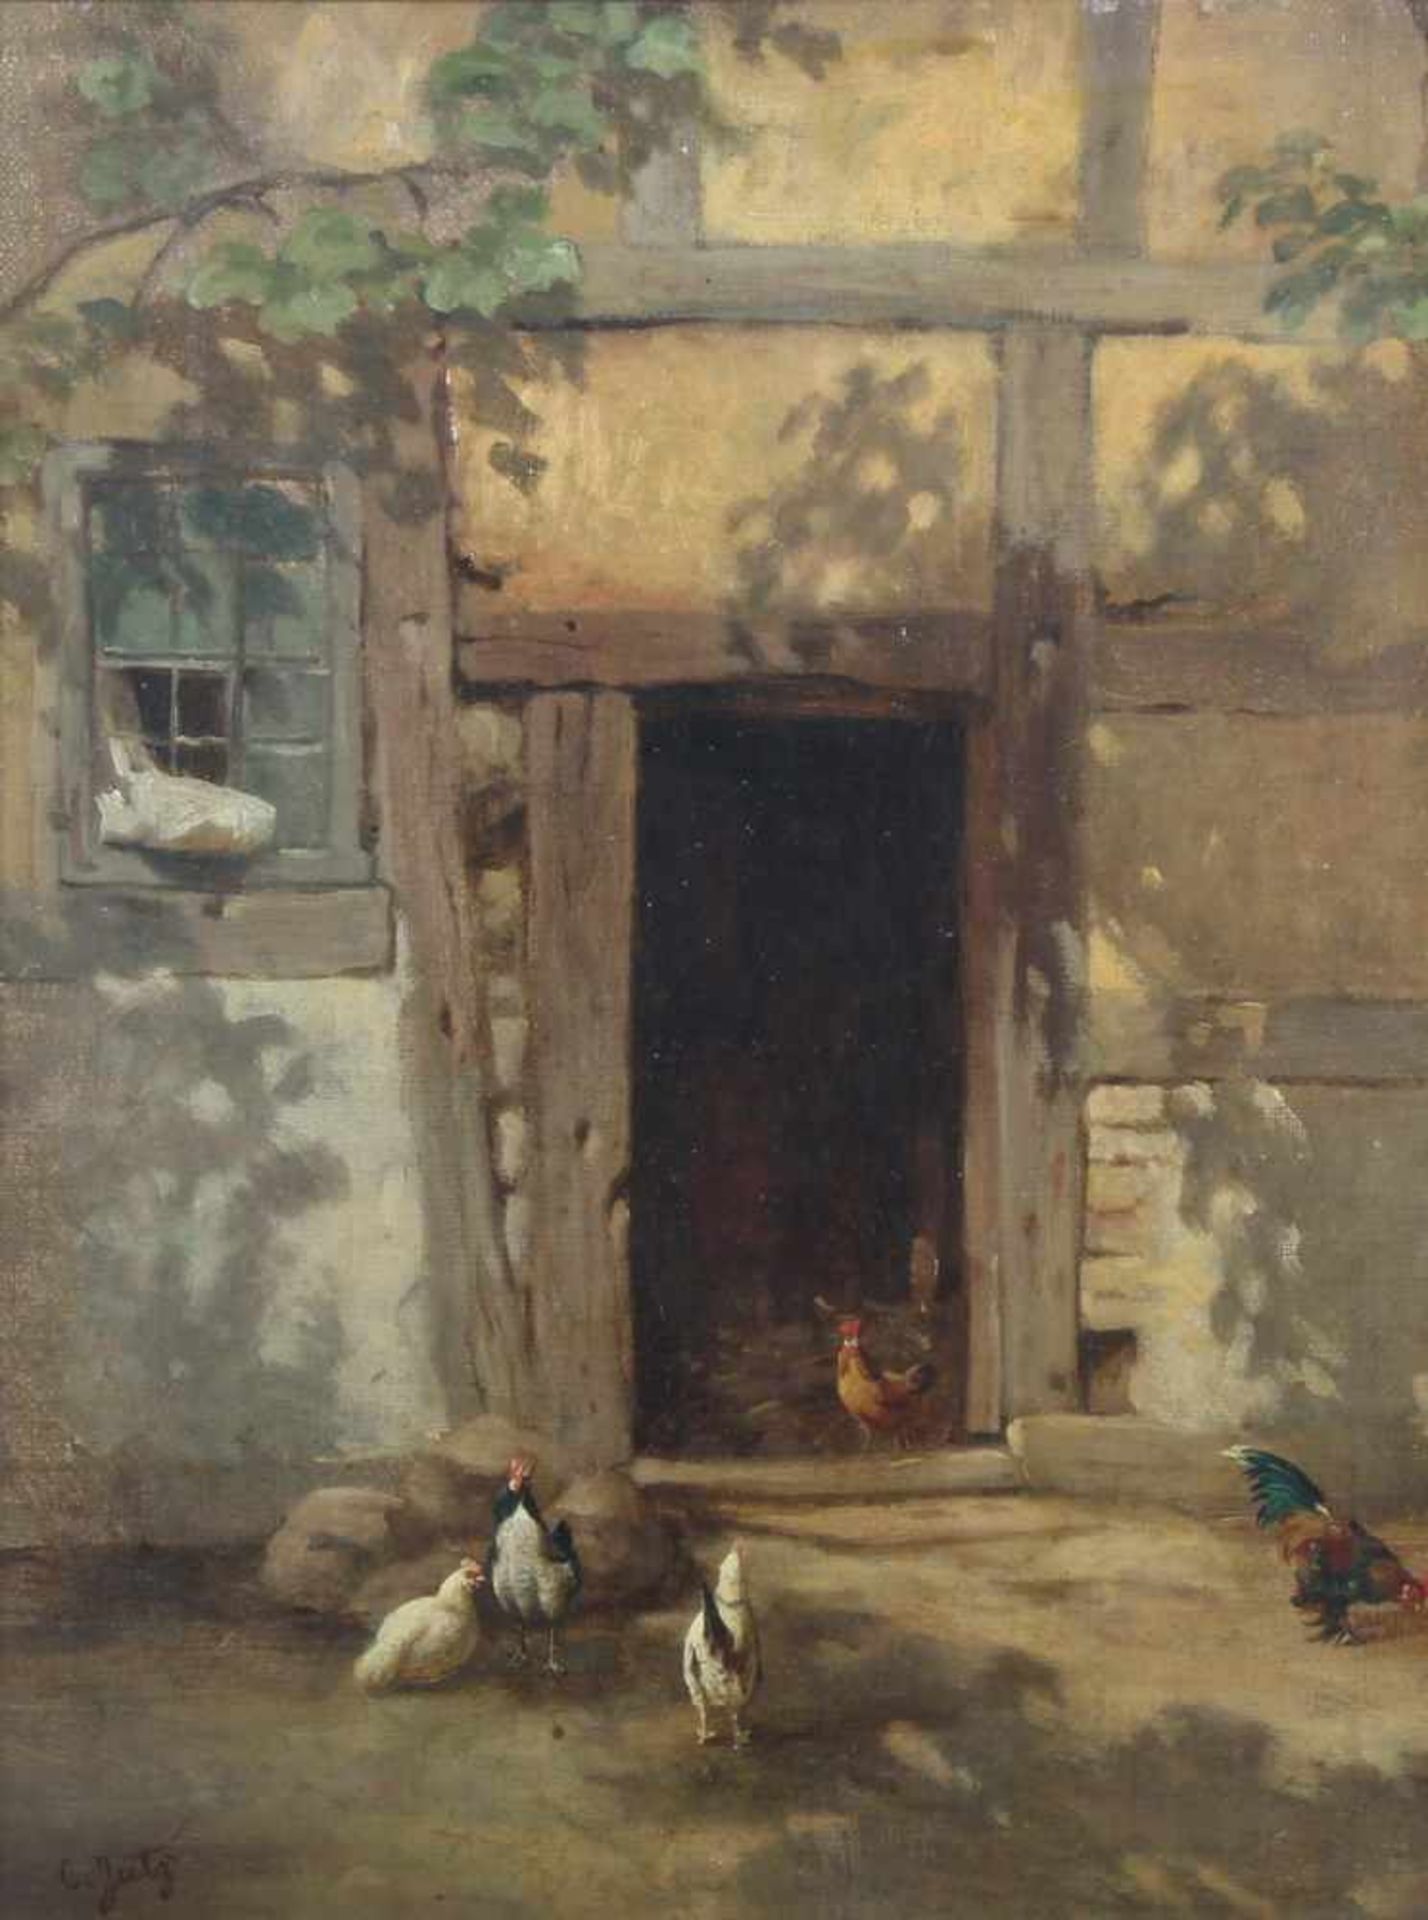 Jutz, C. (19./20. Jh.), "Hühner im Hof", Öl auf Leinwand, auf Holz, signiert unten links C. Jutz, 34